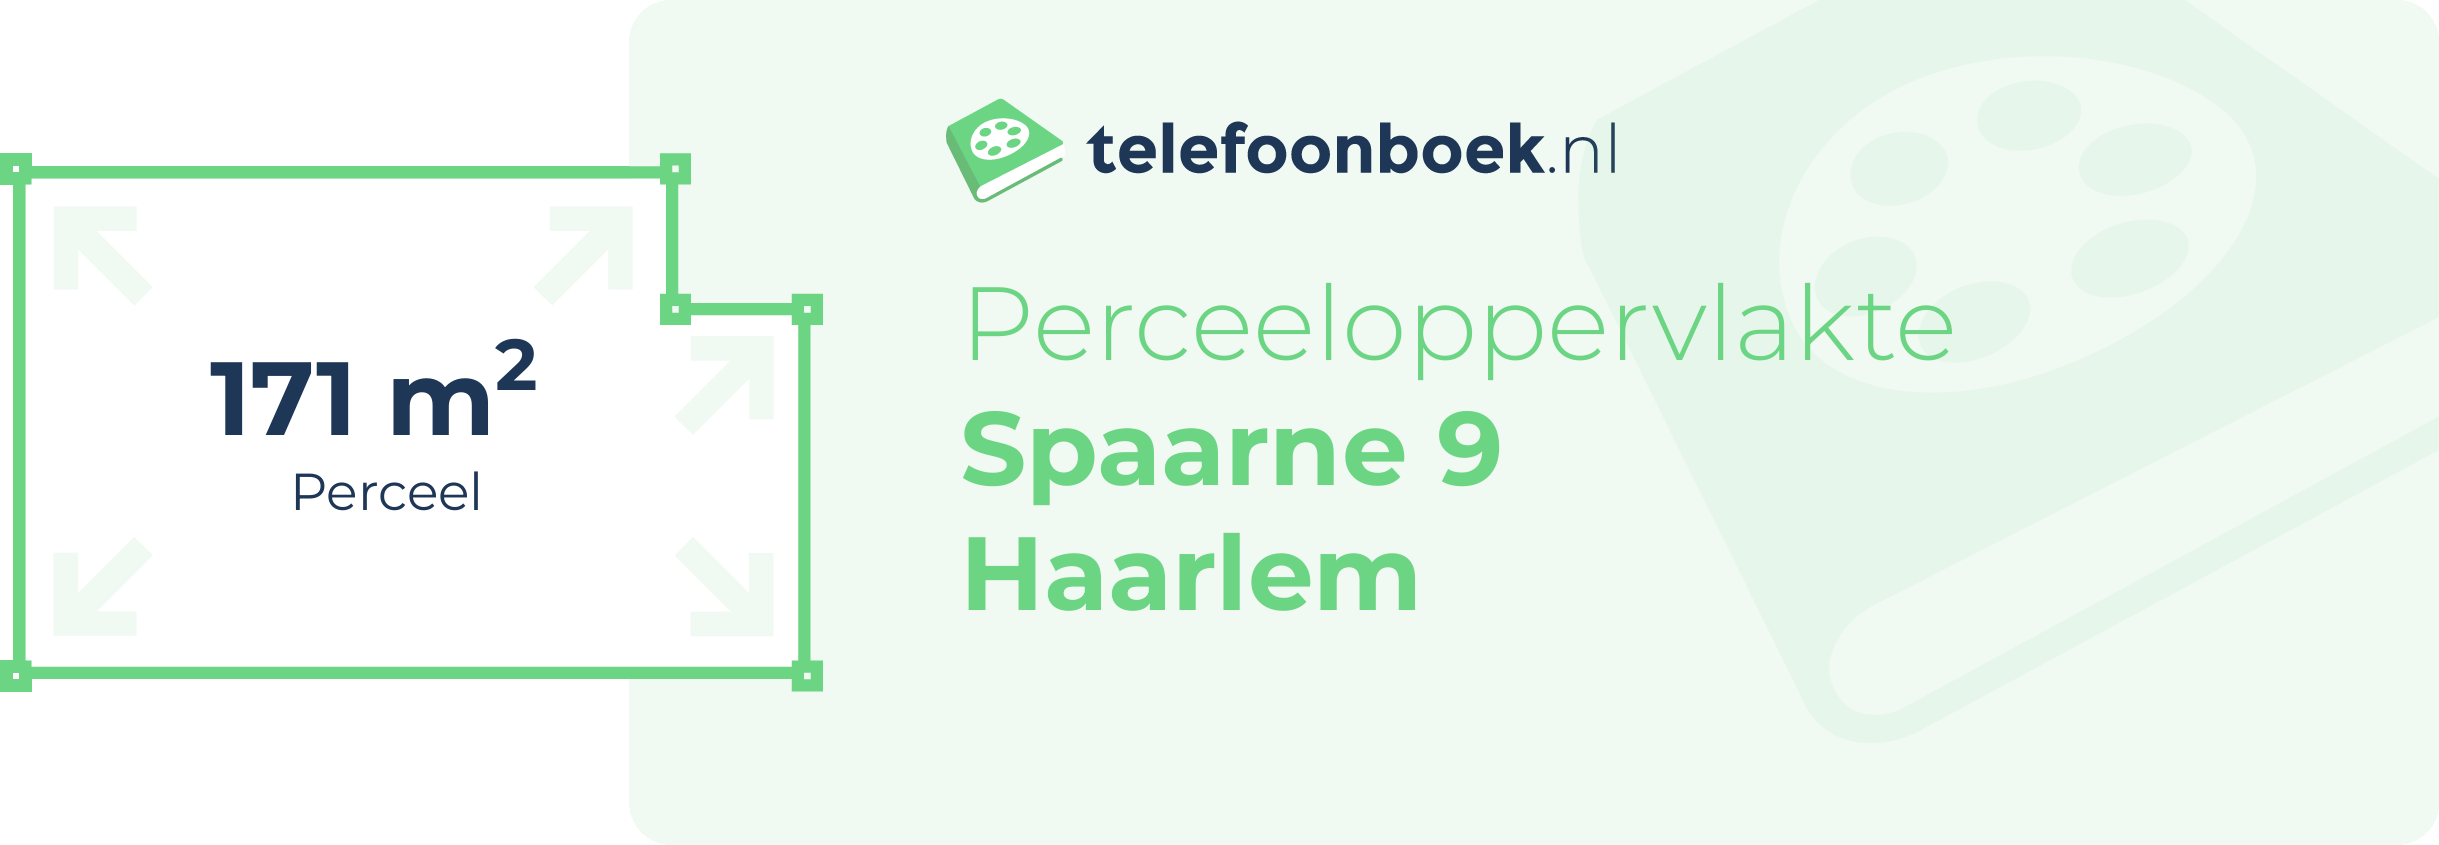 Perceeloppervlakte Spaarne 9 Haarlem